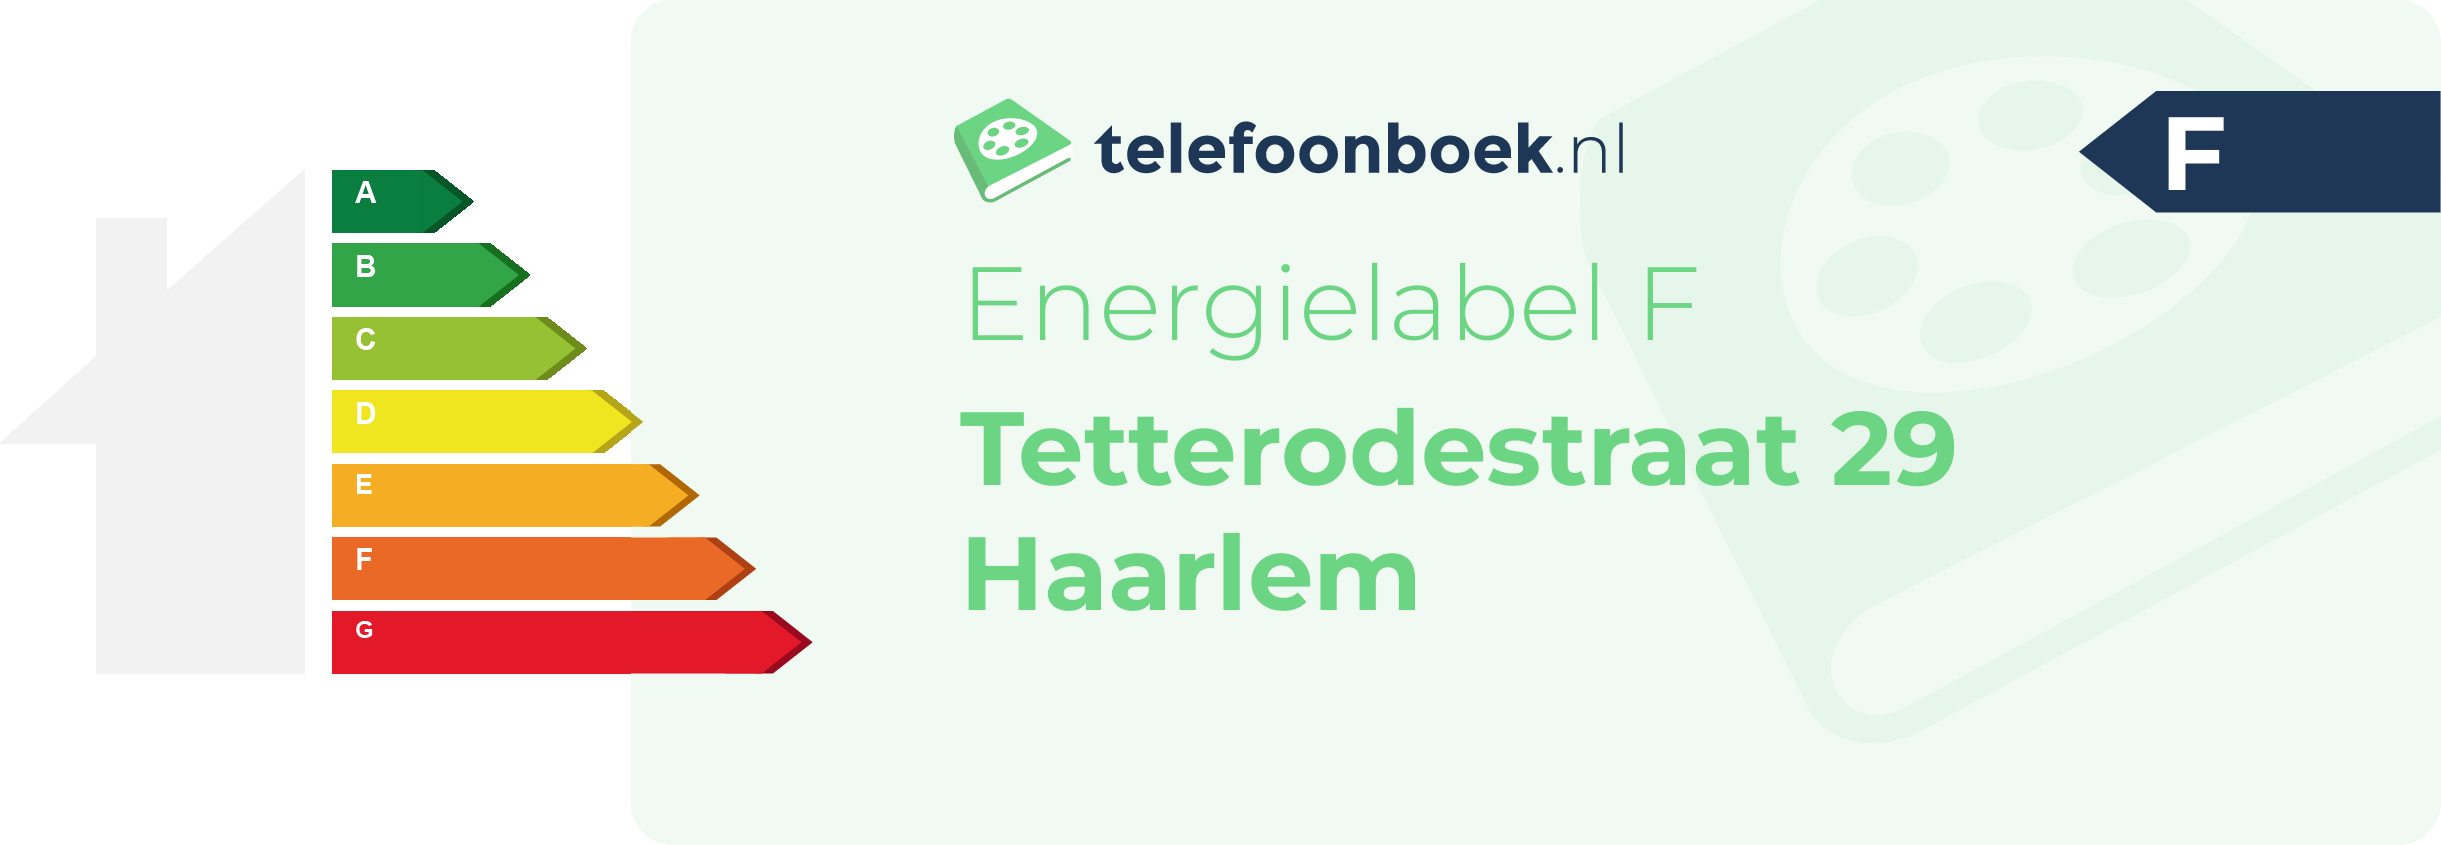 Energielabel Tetterodestraat 29 Haarlem